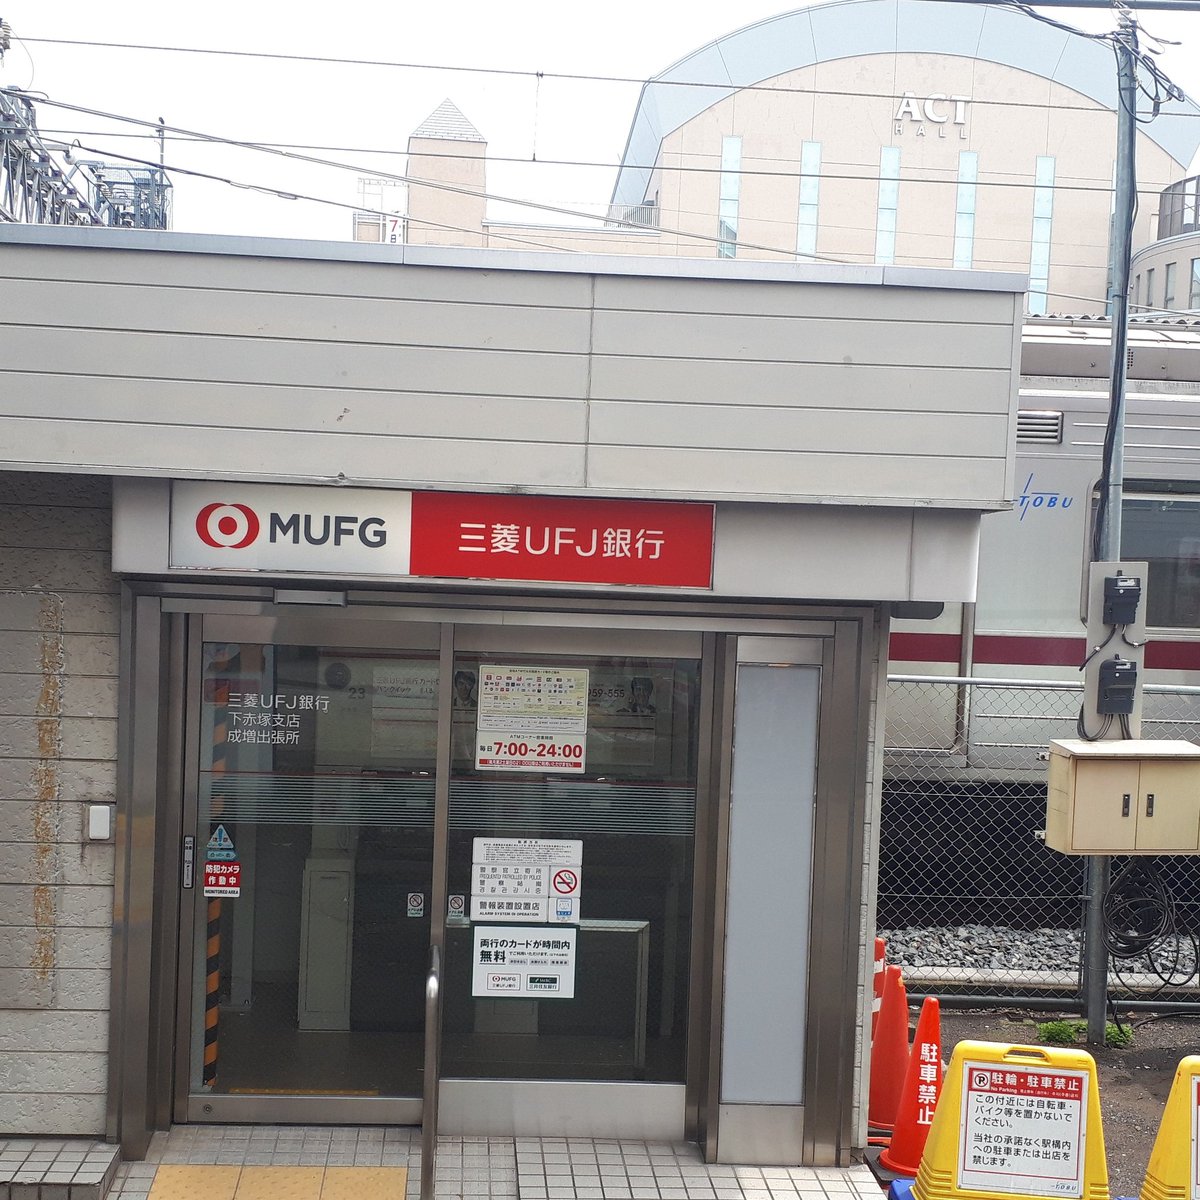 三菱東京ufj銀行のatmで 心乱される 不評の声が続出 ライブドアニュース